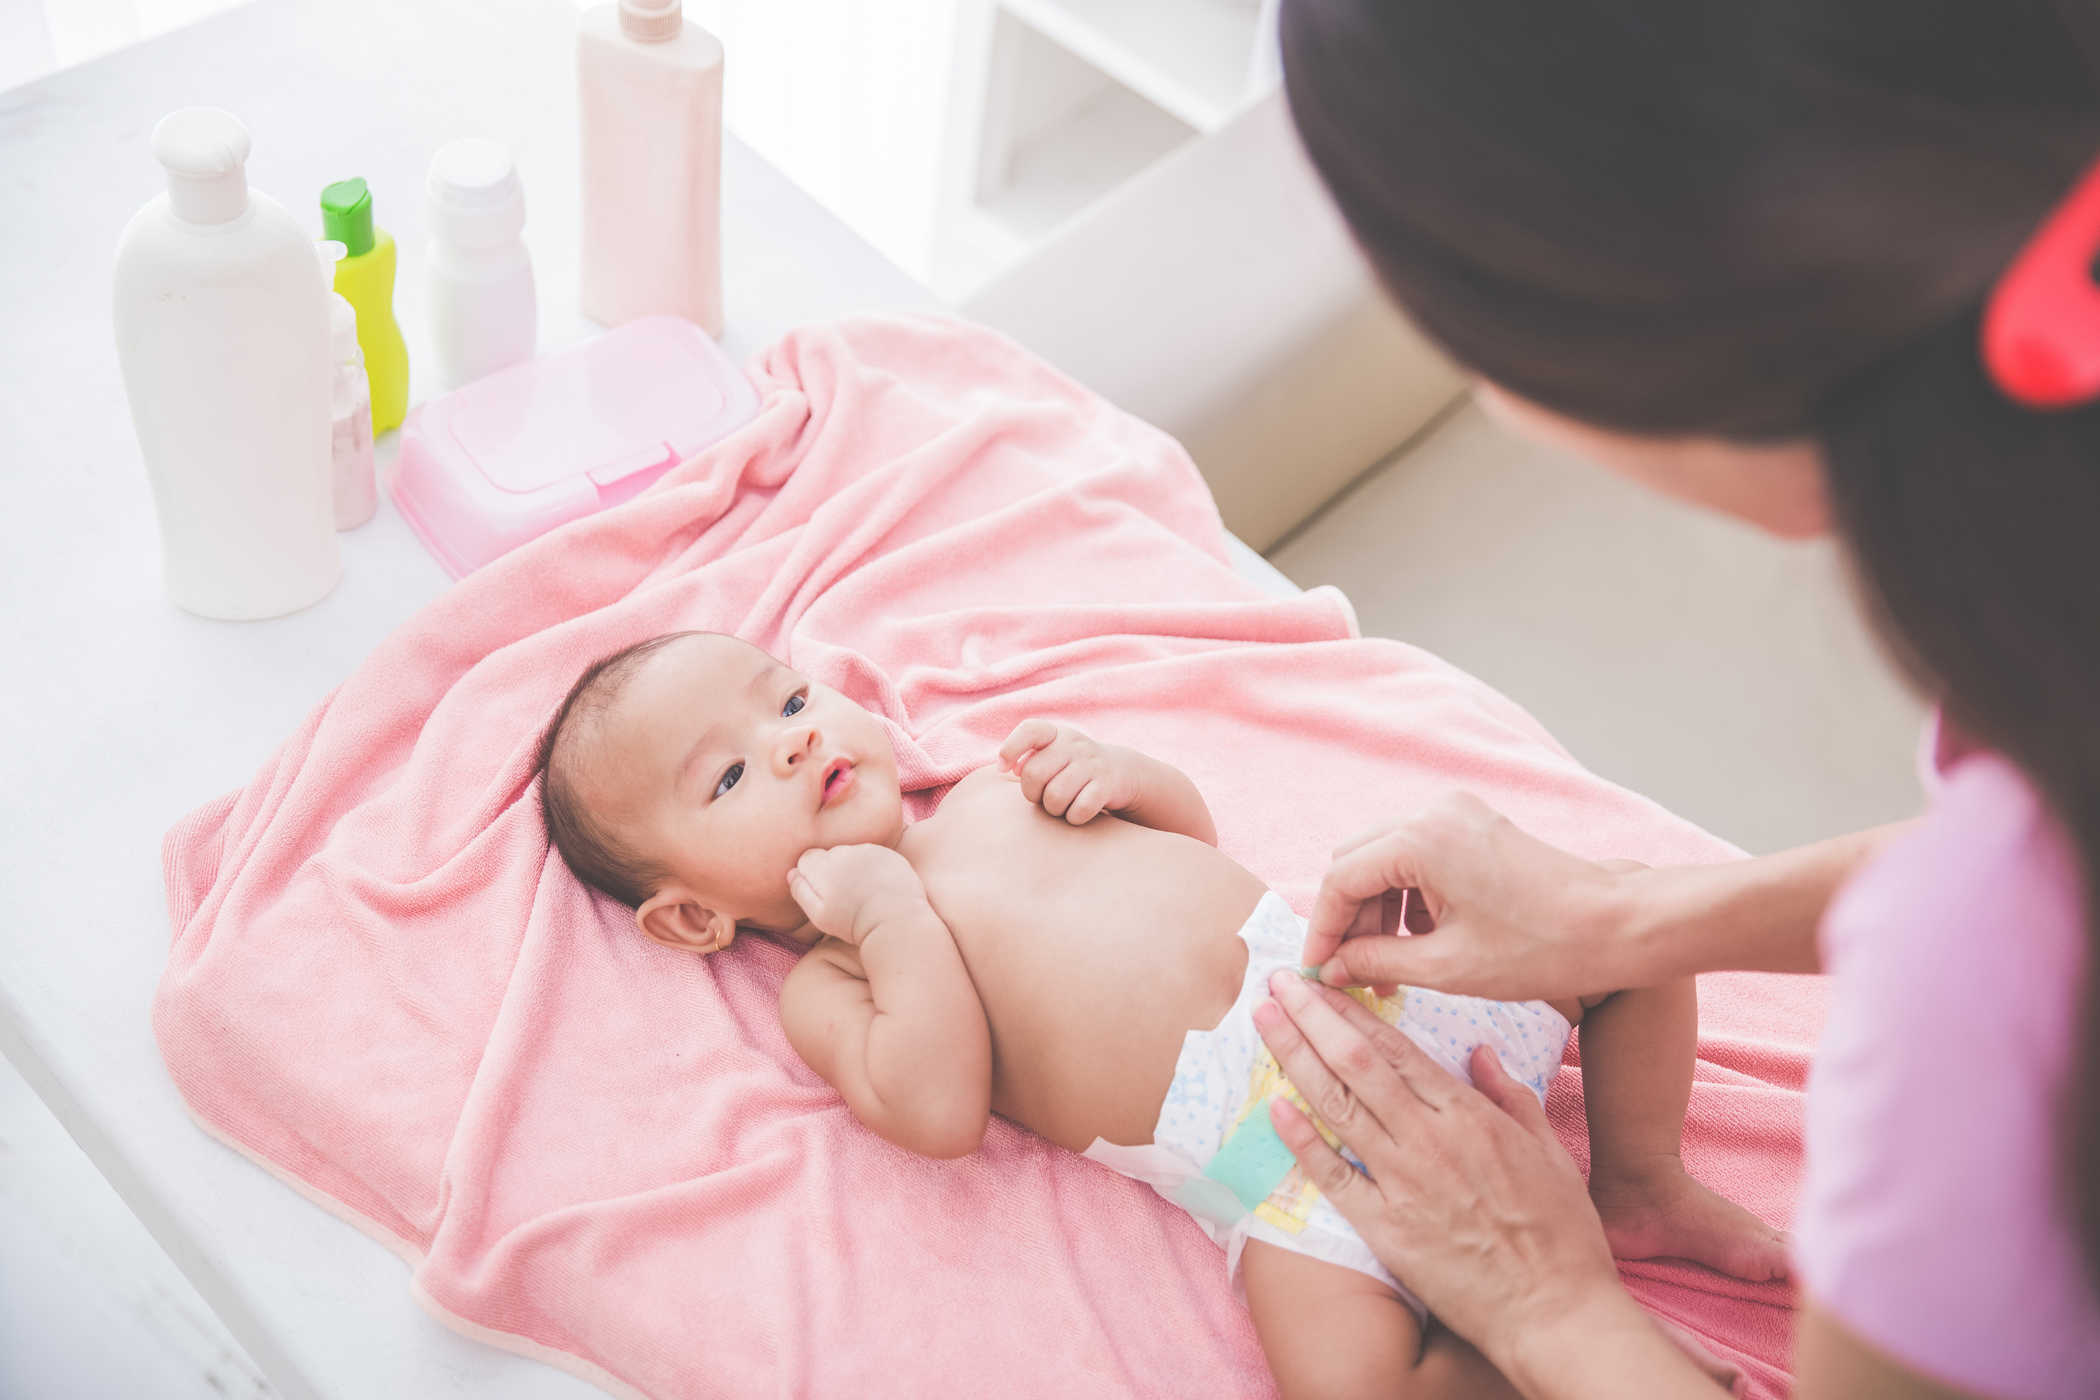 머리, 탯줄, 친밀한 장기에 이르기까지 아기의 몸을 청소하는 방법